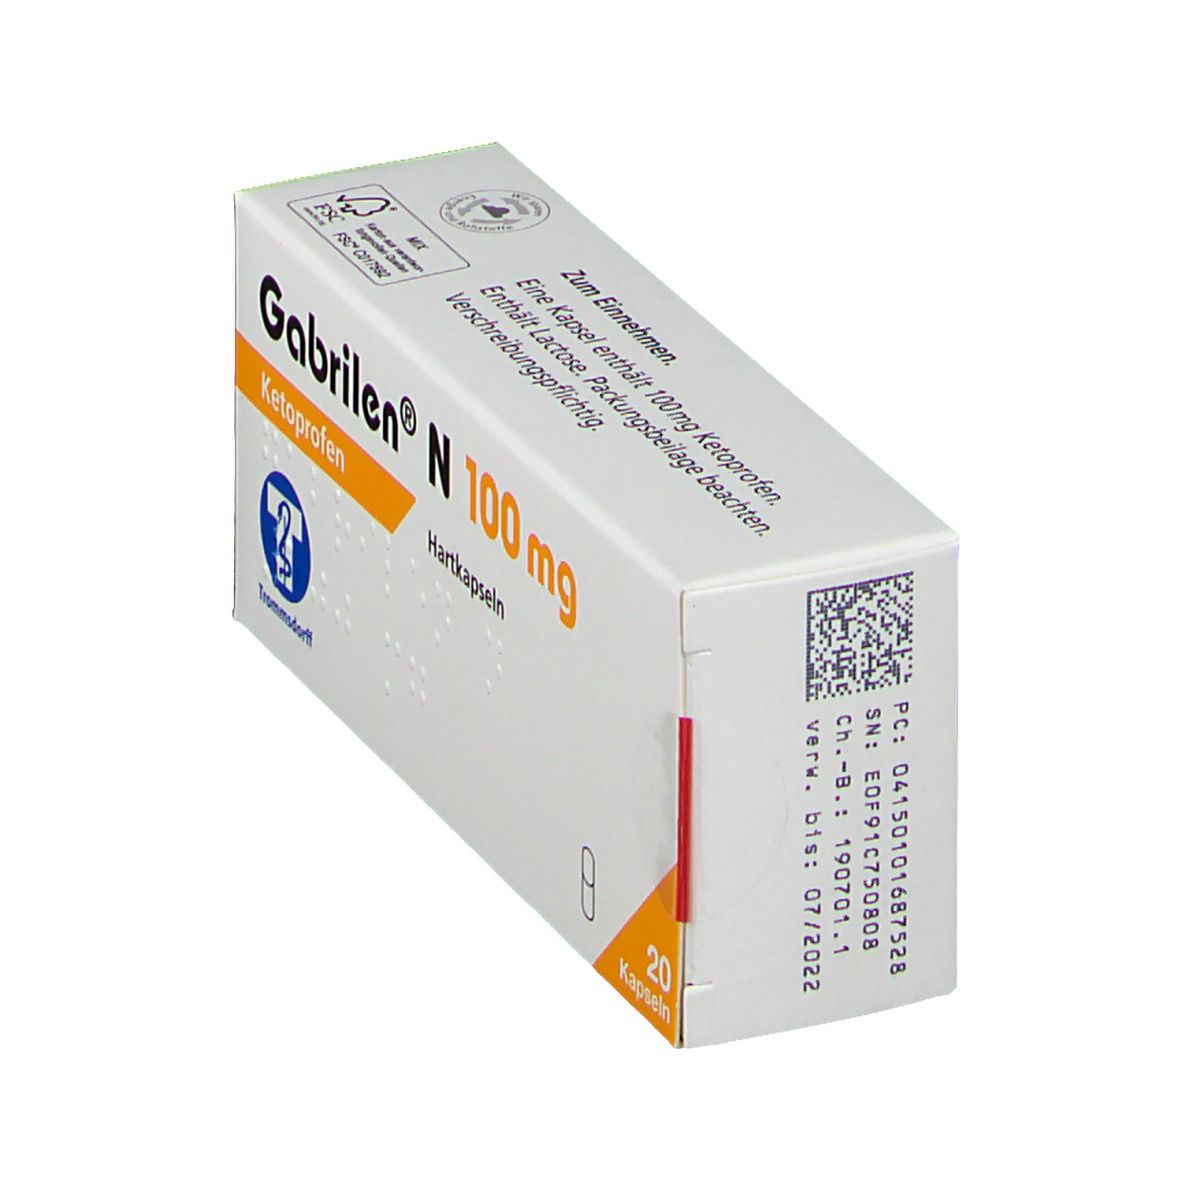 Gabrilen® N 100 mg